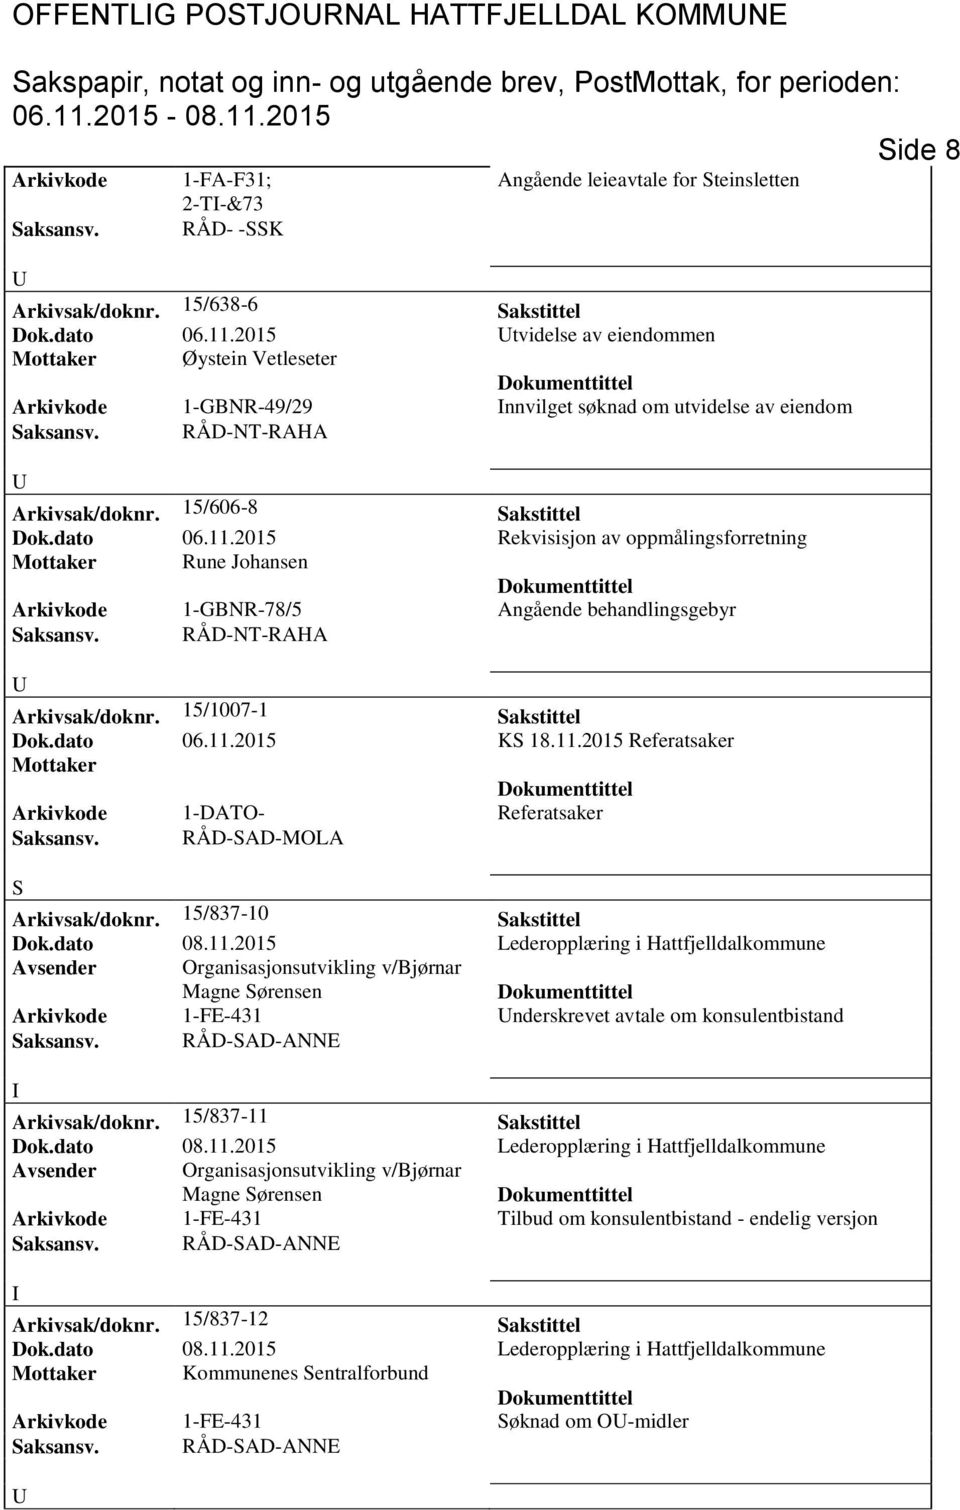 2015 Rekvisisjon av oppmålingsforretning Mottaker Rune Johansen Arkivkode 1-GBNR-78/5 Angående behandlingsgebyr Arkivsak/doknr. 15/1007-1 Sakstittel Dok.dato 06.11.